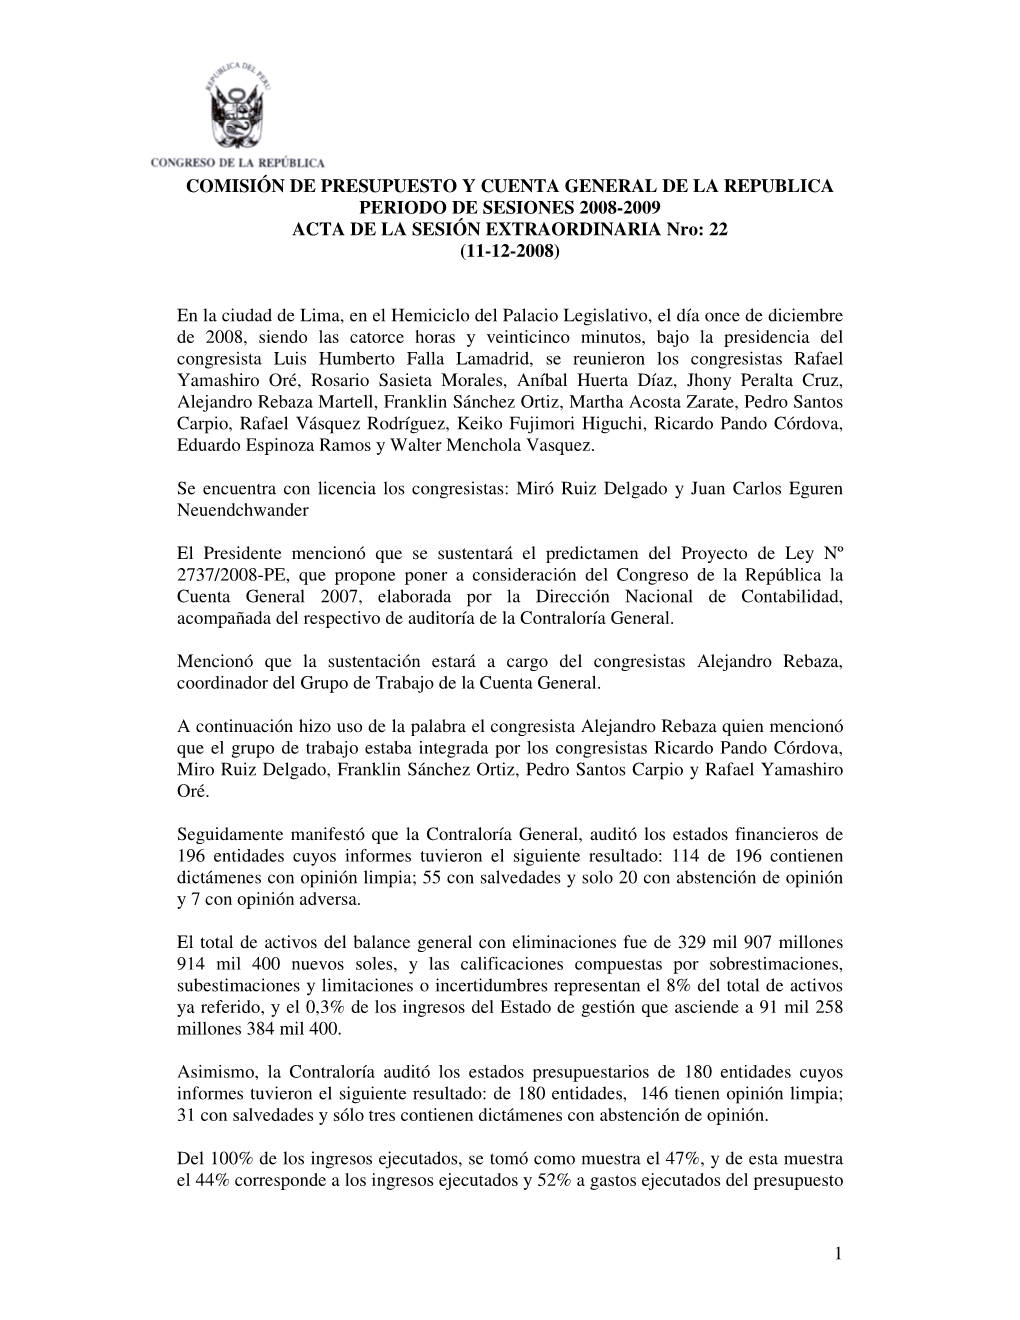 COMISIÓN DE PRESUPUESTO Y CUENTA GENERAL DE LA REPUBLICA PERIODO DE SESIONES 2008-2009 ACTA DE LA SESIÓN EXTRAORDINARIA Nro: 22 (11-12-2008)